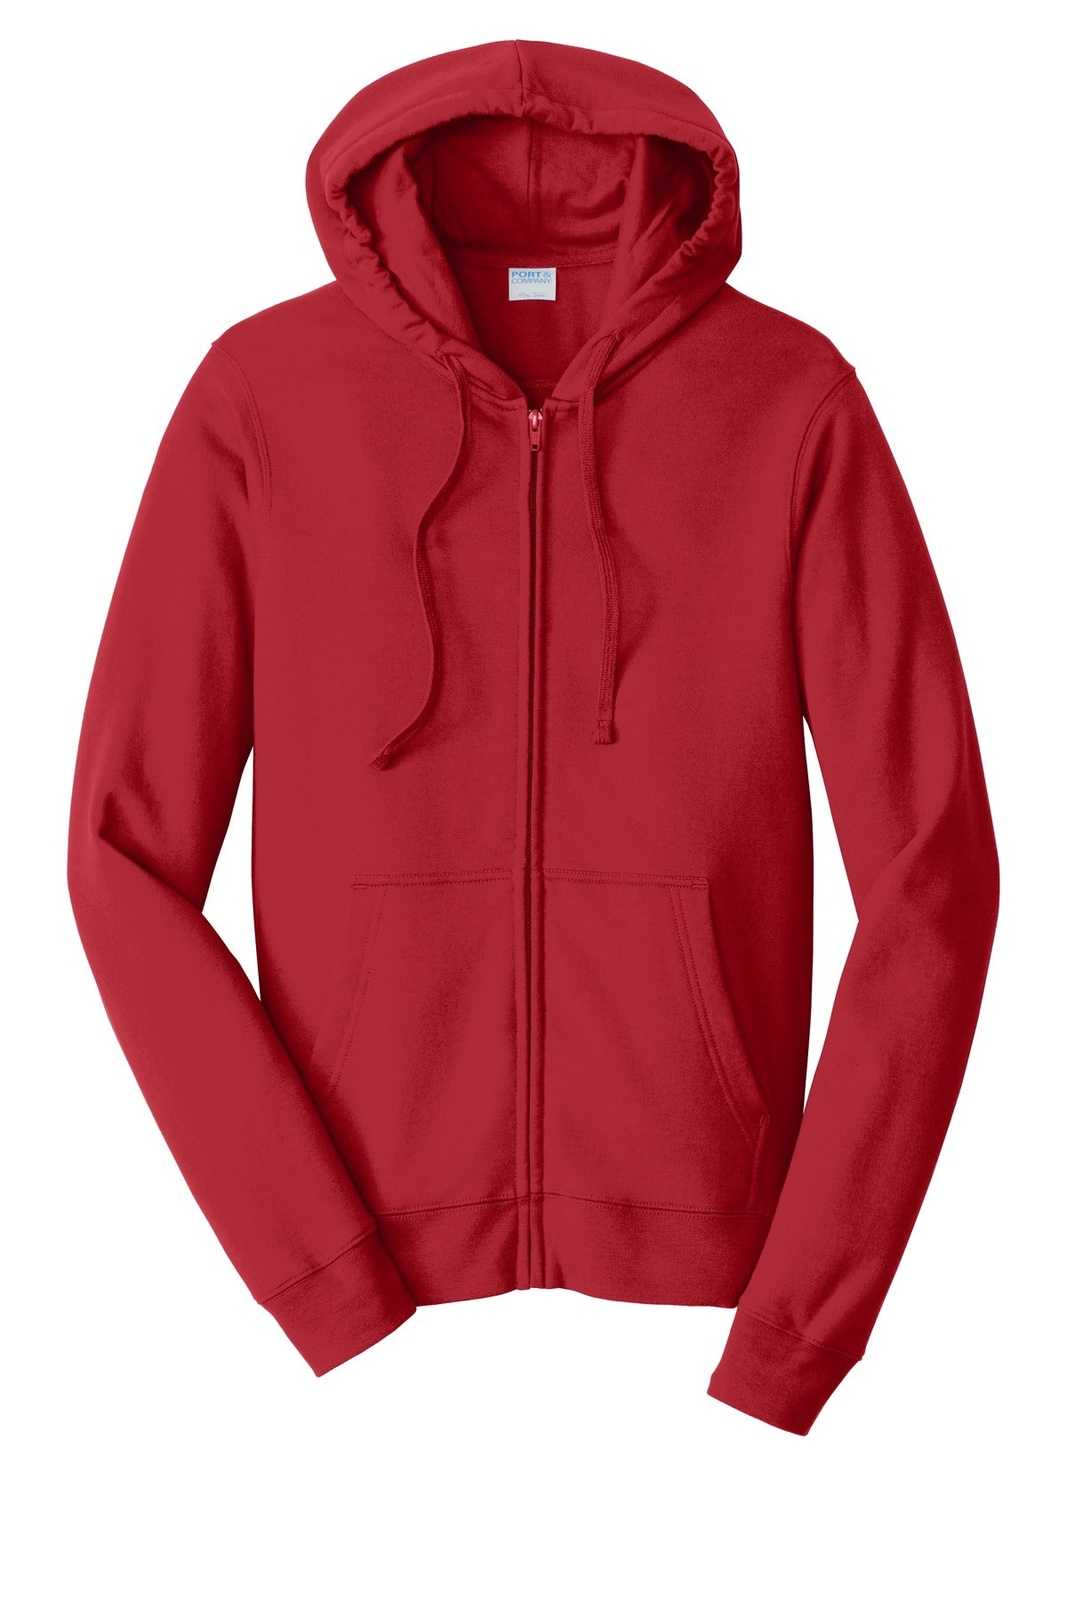 Port &amp; Company PC850ZH Fan Favorite Fleece Full-Zip Hooded Sweatshirt - Team Cardinal - HIT a Double - 5